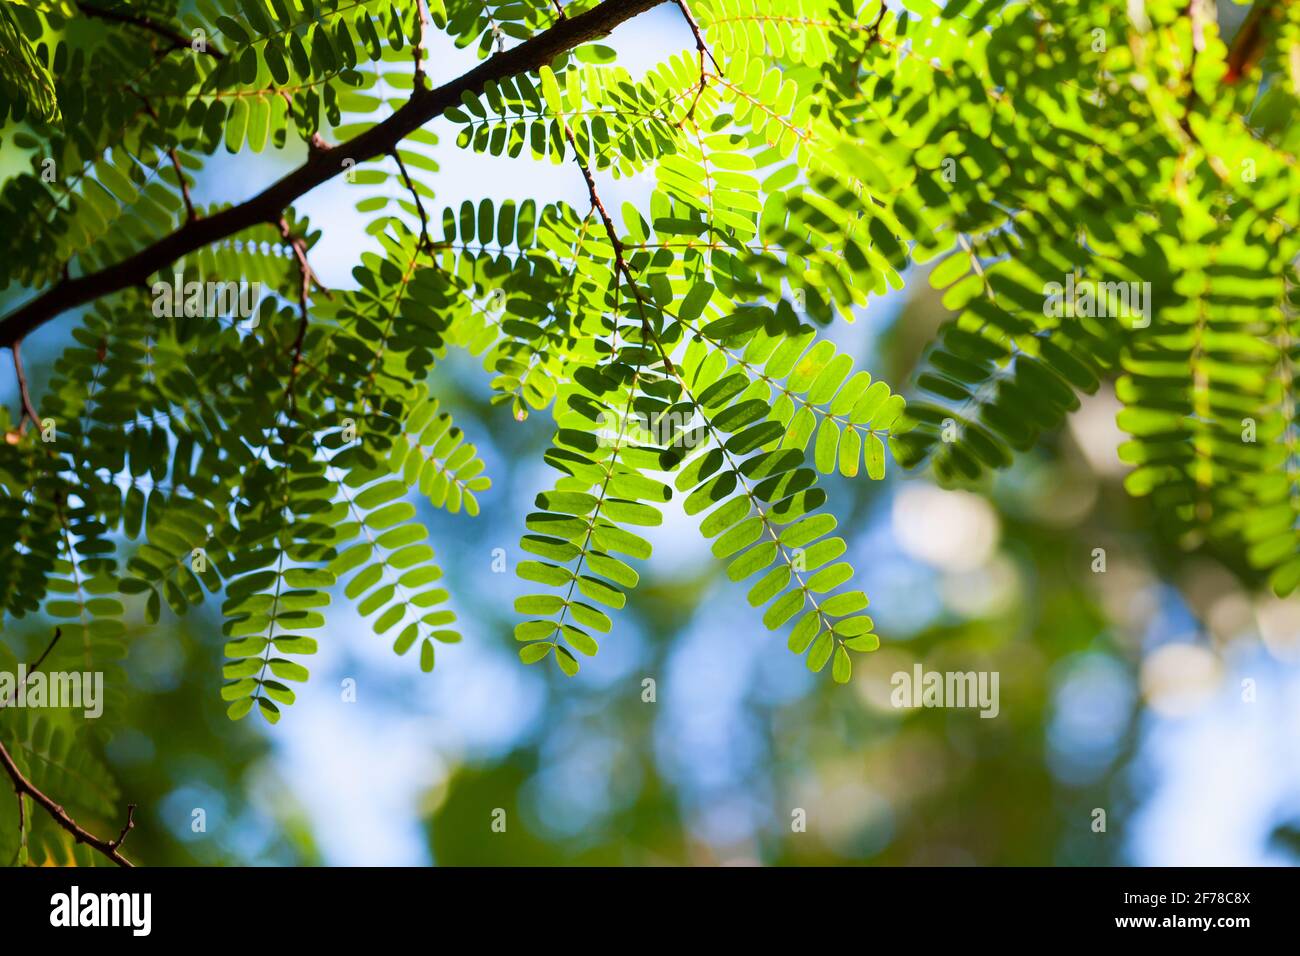 Foto de fondo natural con hojas verdes frescas al sol Foto de stock